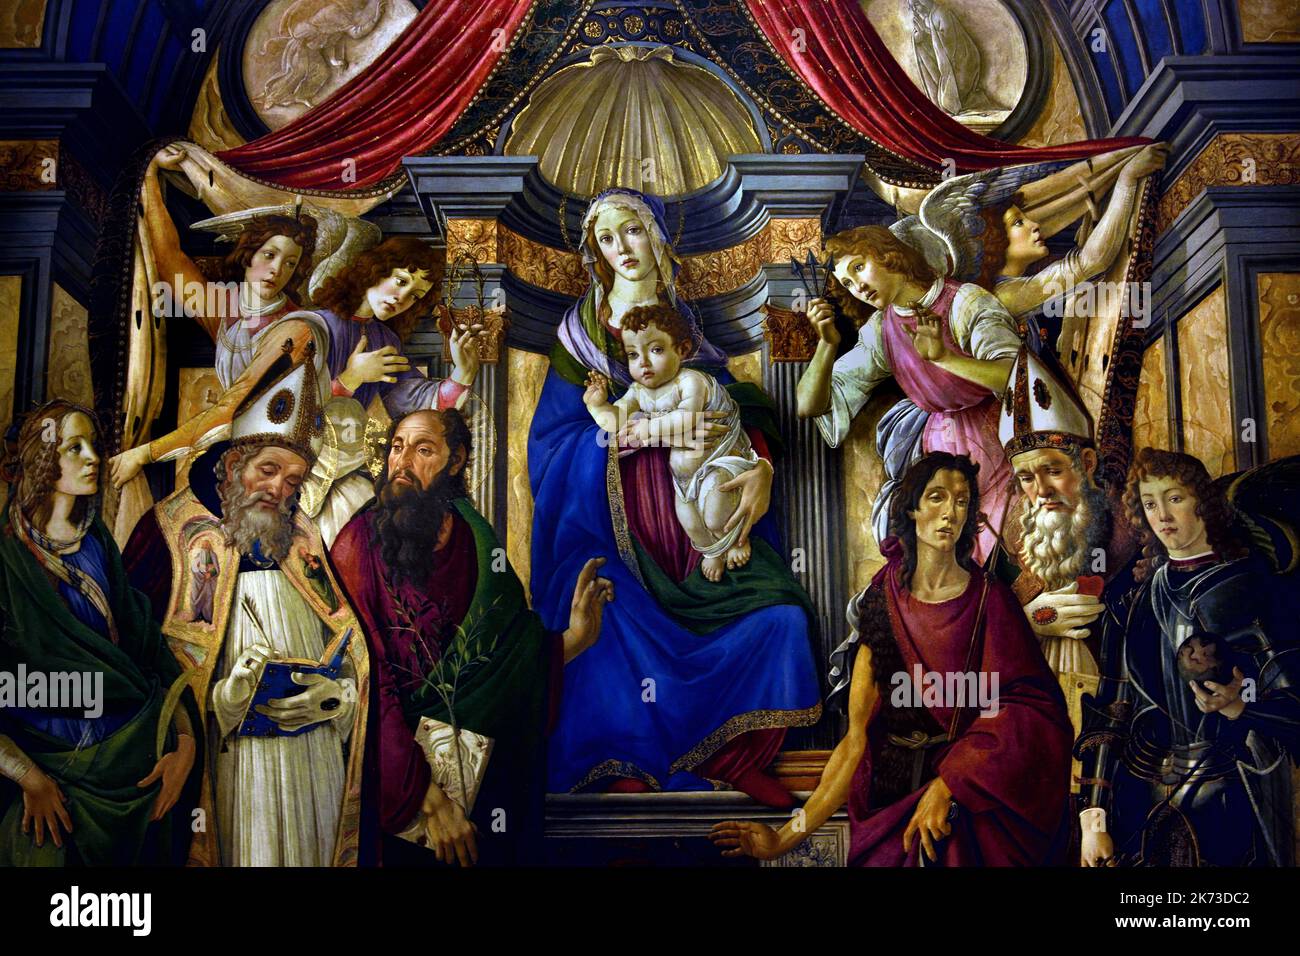 Madonna mit Kind, mit, vier Engel, sechs Heilige, das Altarbild von San Barnaba, 1487, von, Sandro Botticelli, 1445-1510, Uffizien, Florenz, Toskana, Italien. ( Florenz Italienischer Maler der Florentiner Schule der frühen Renaissance) Stockfoto